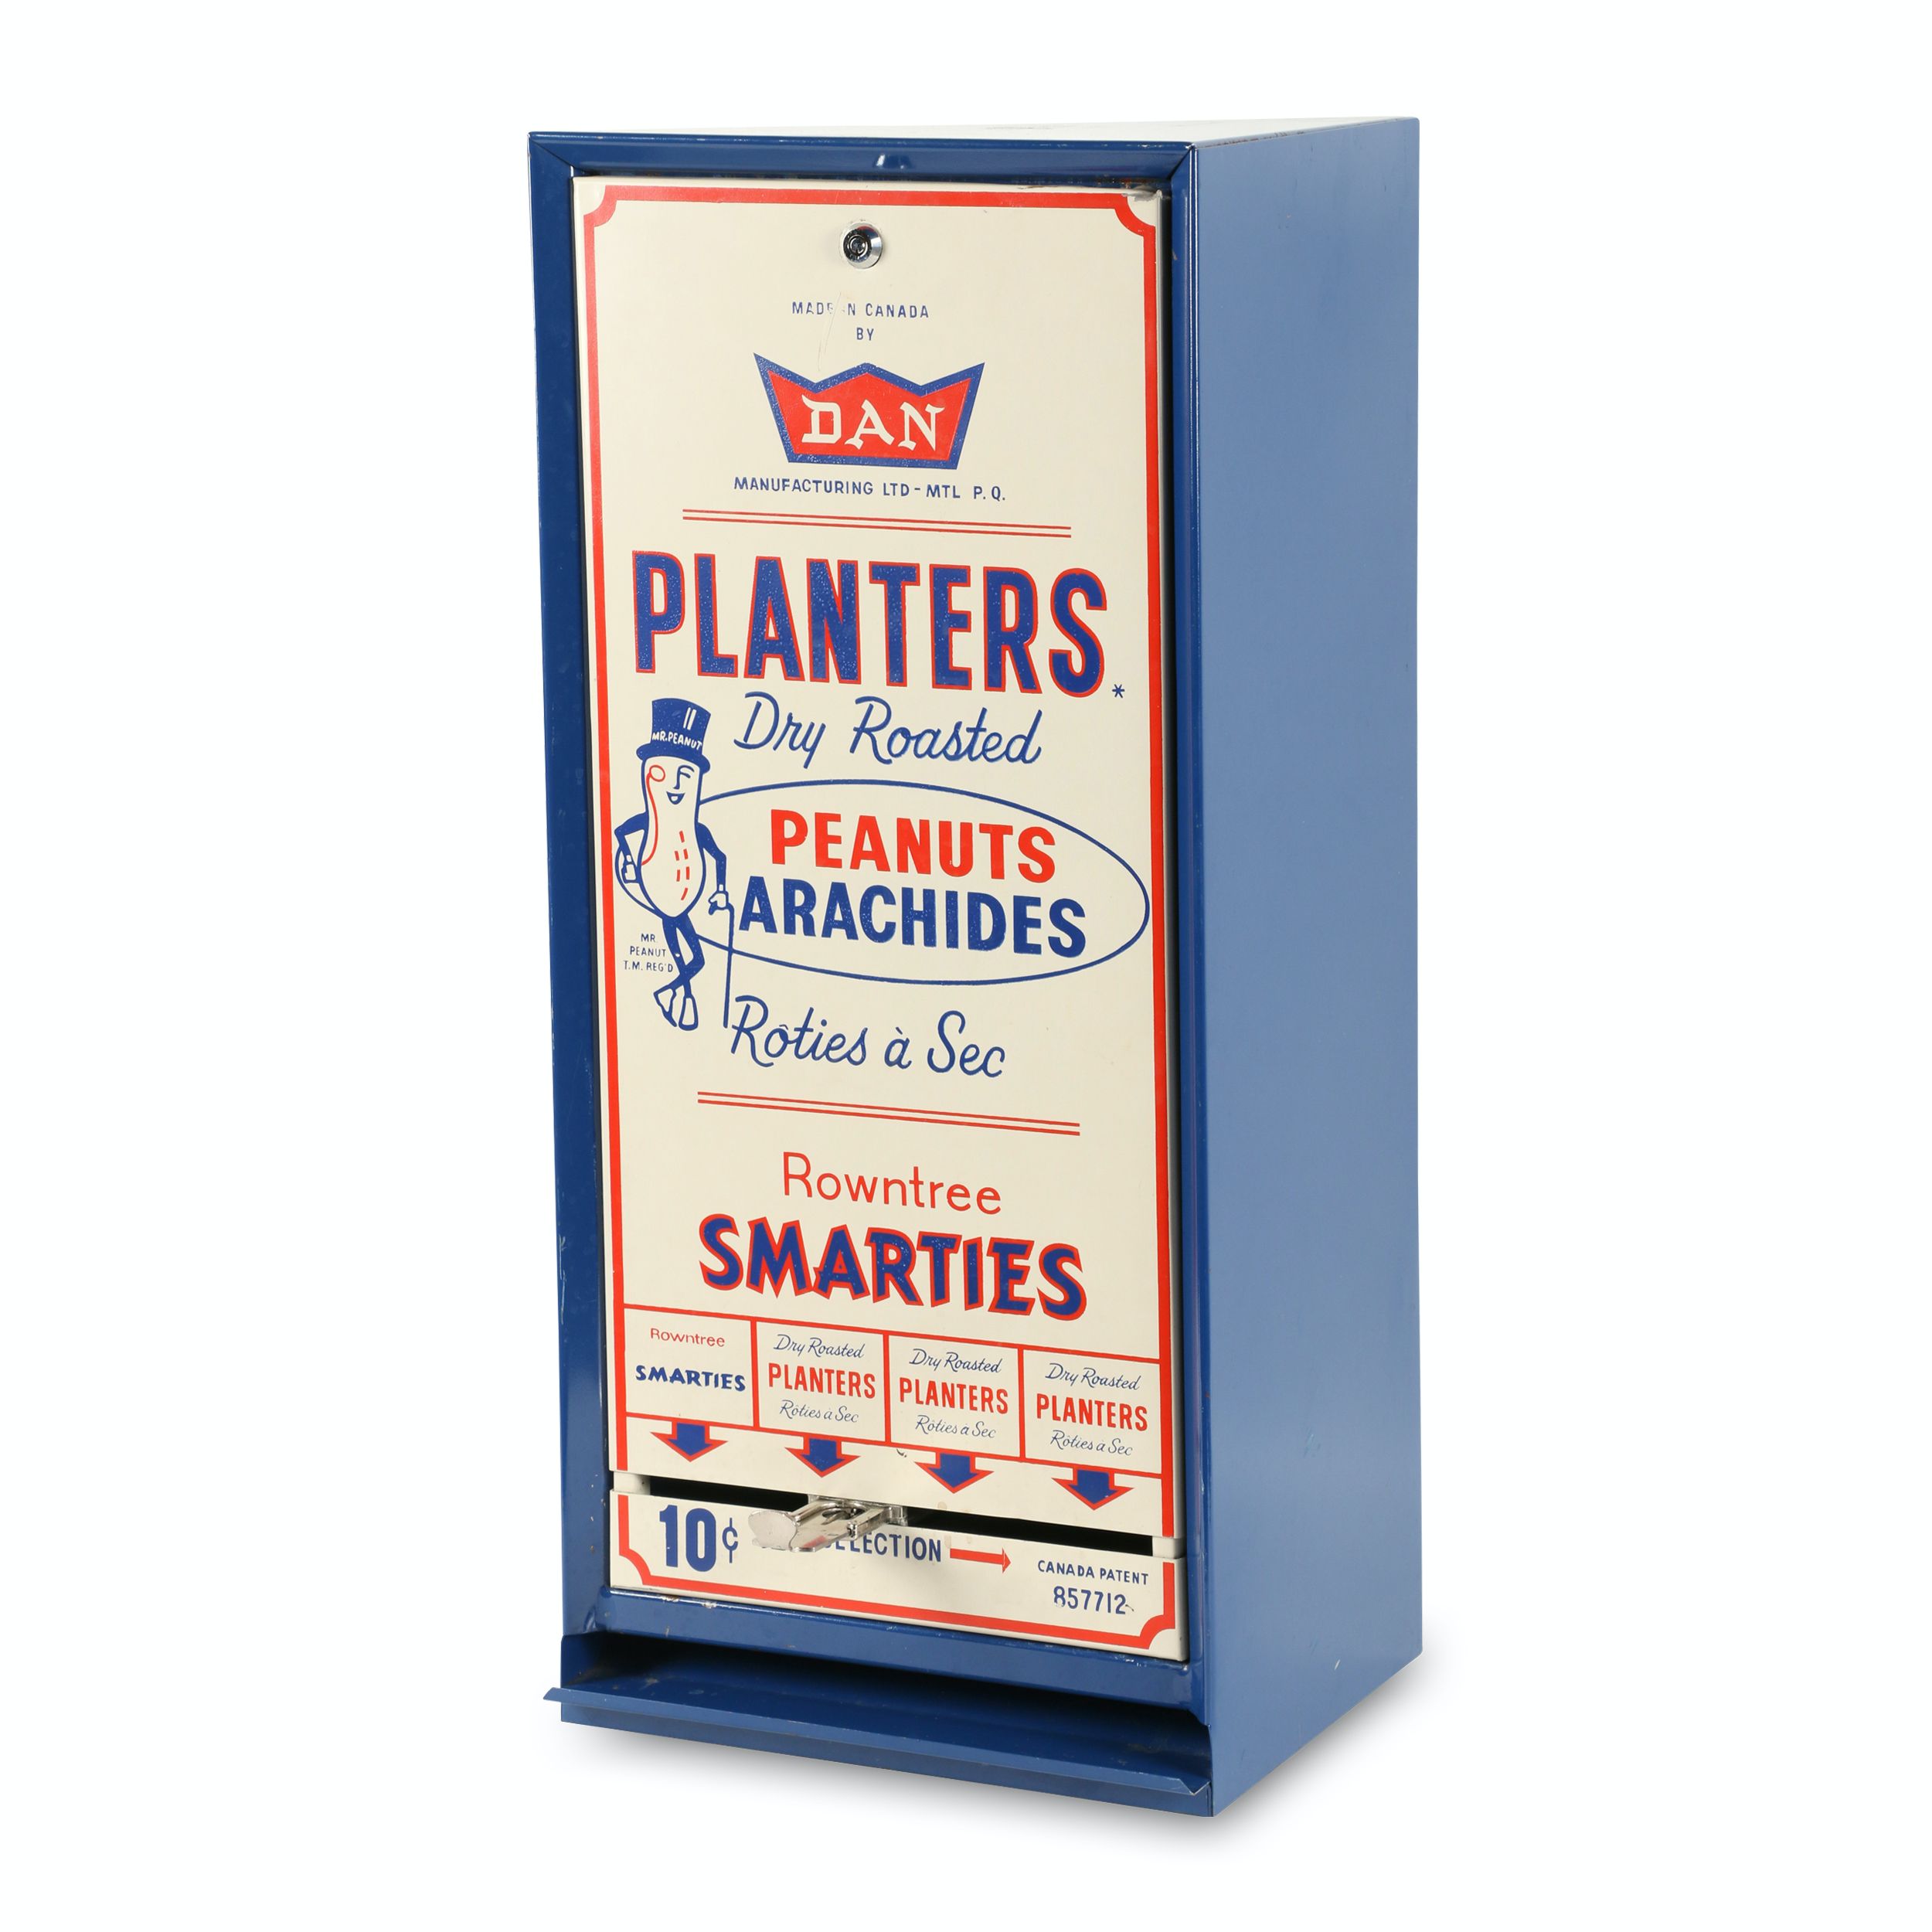 DAN Planter's Peanuts 10c Vending Machine | Miller & Miller